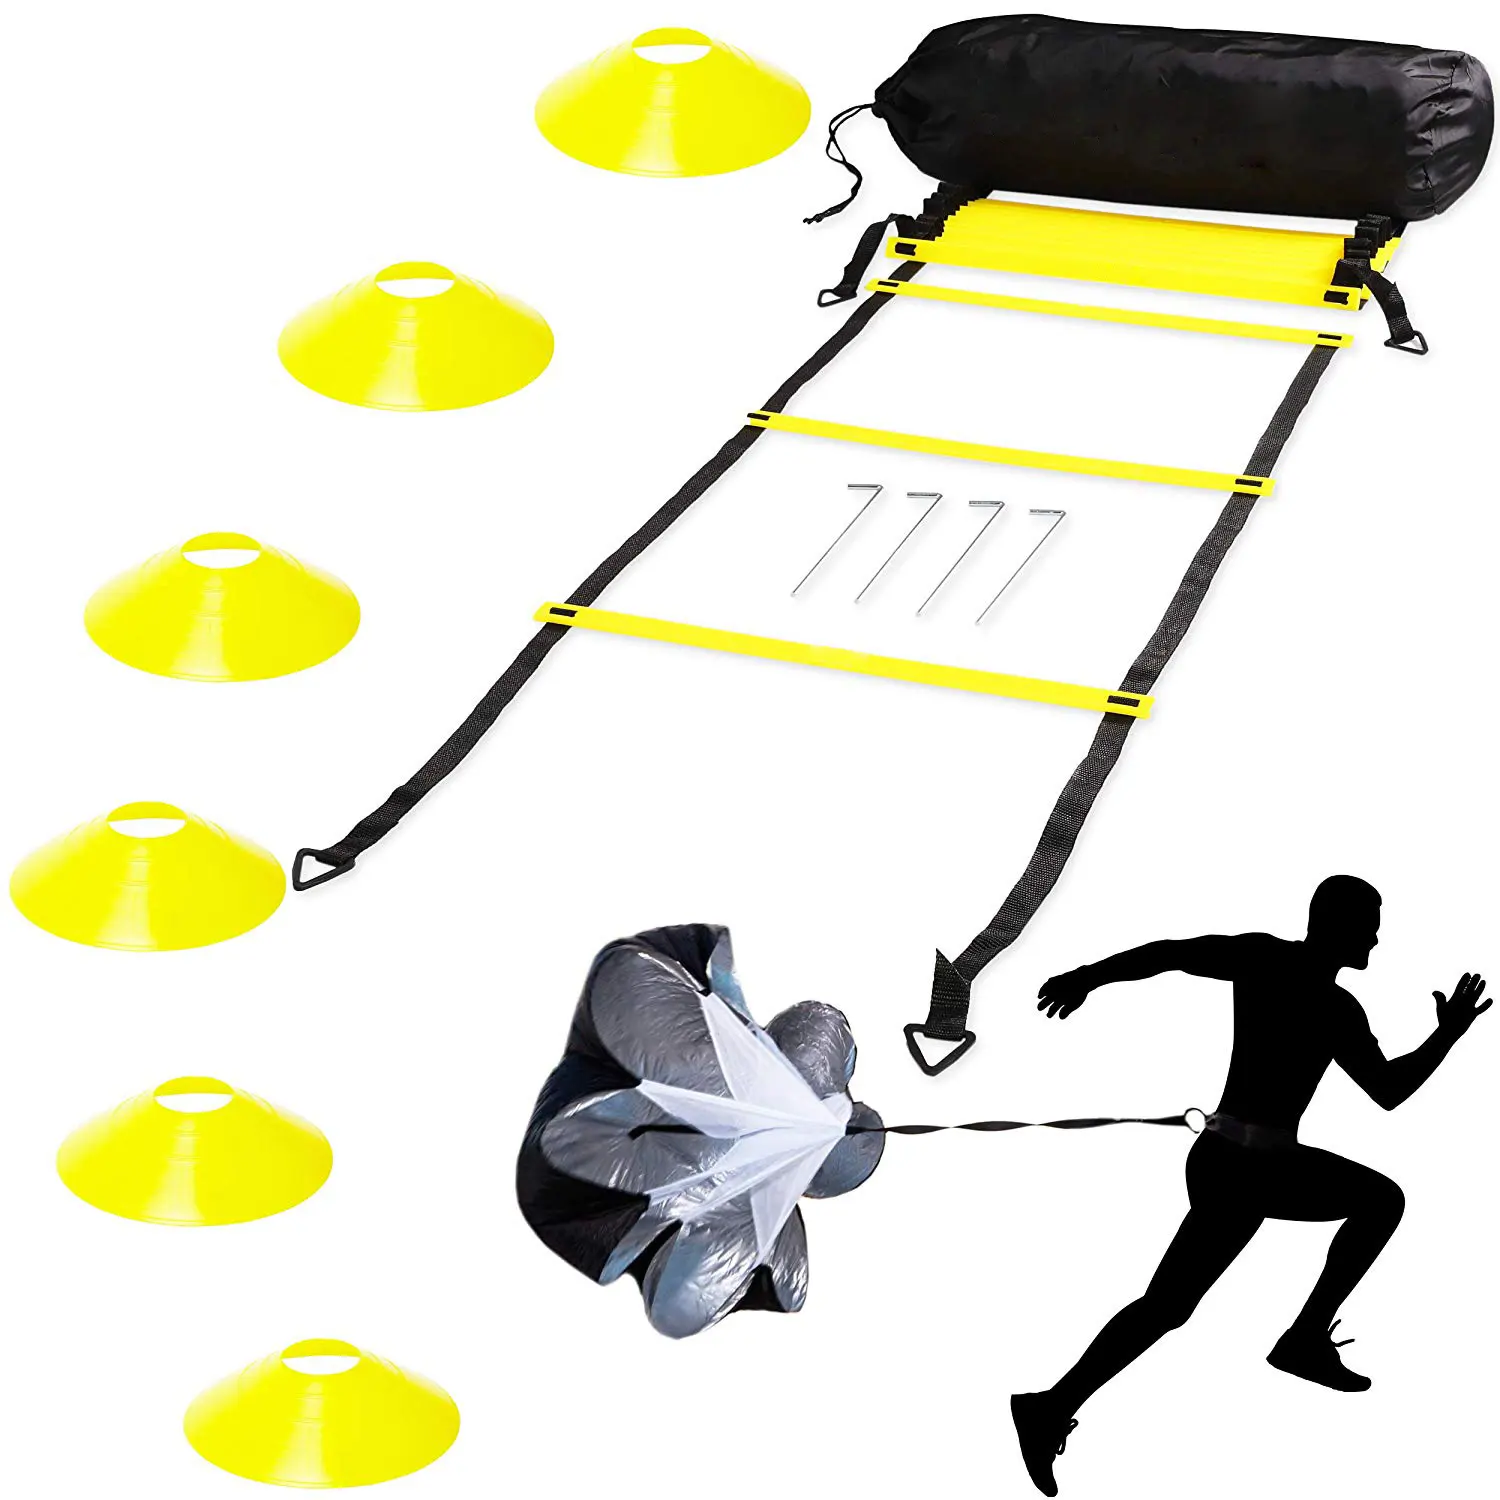 Speed und Agility Ladder Training Set mit 6 disc Cones und Resistance Parachute